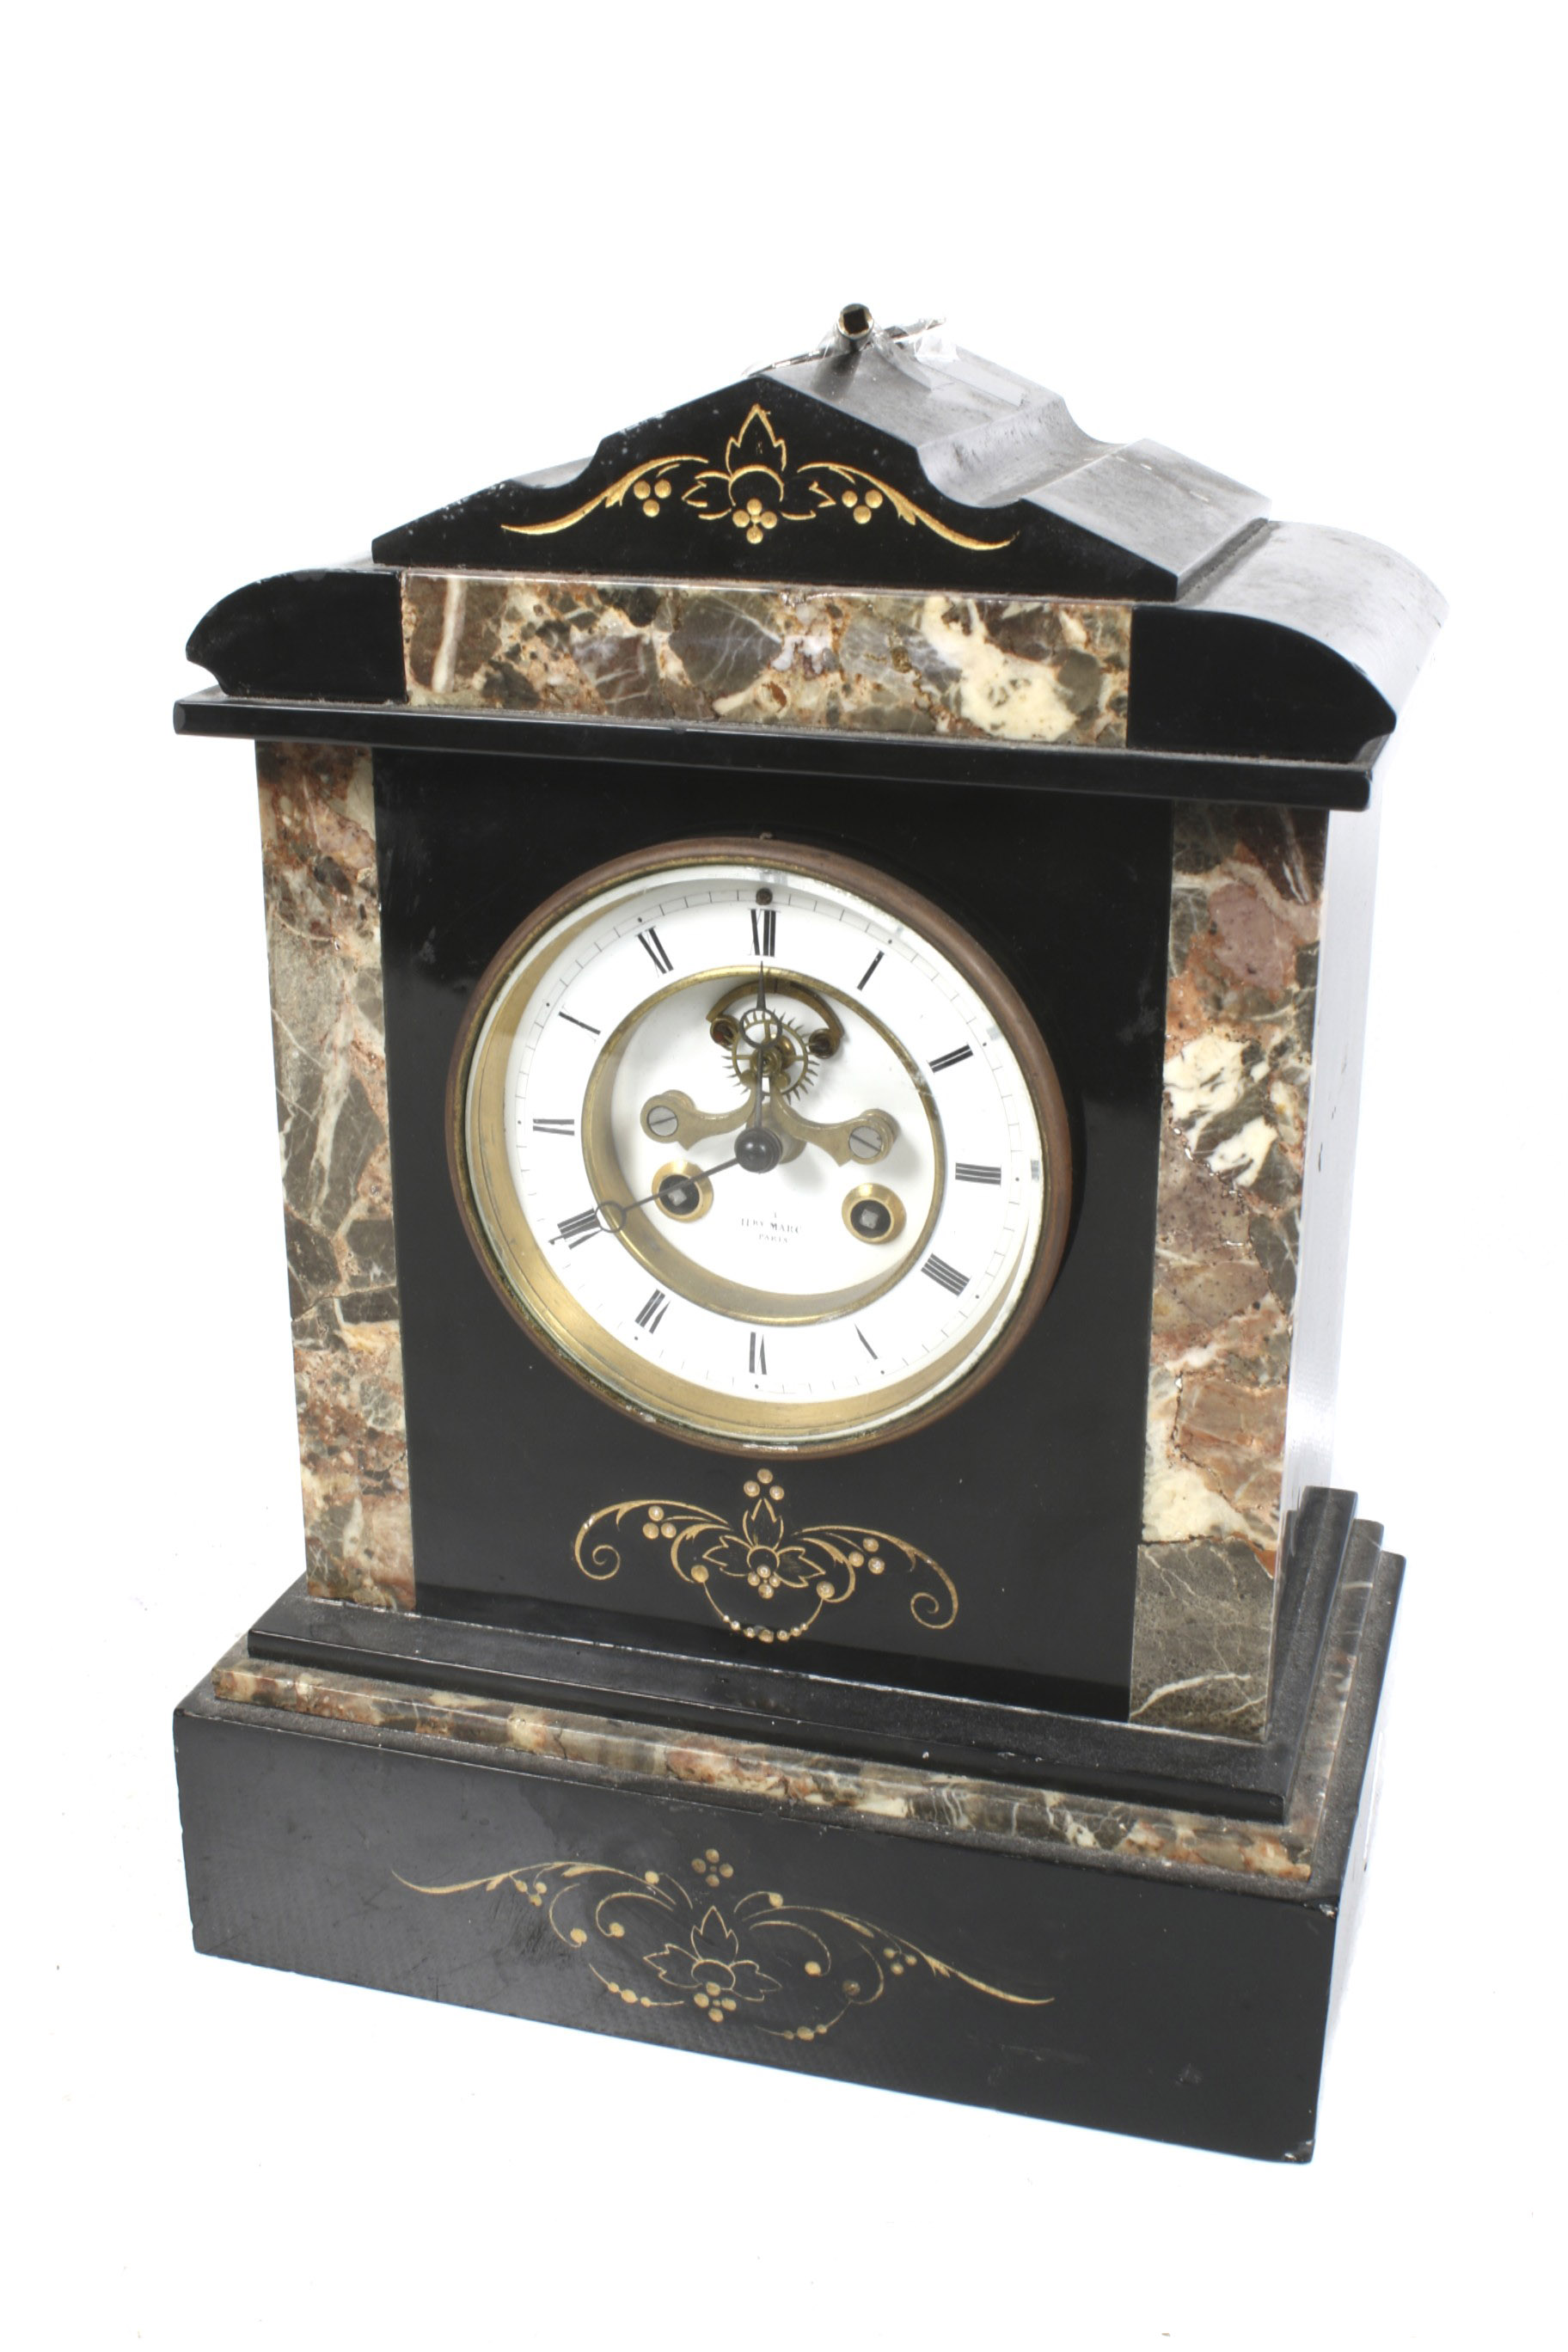 A 19th century Henri Marc of Paris mantle clock.